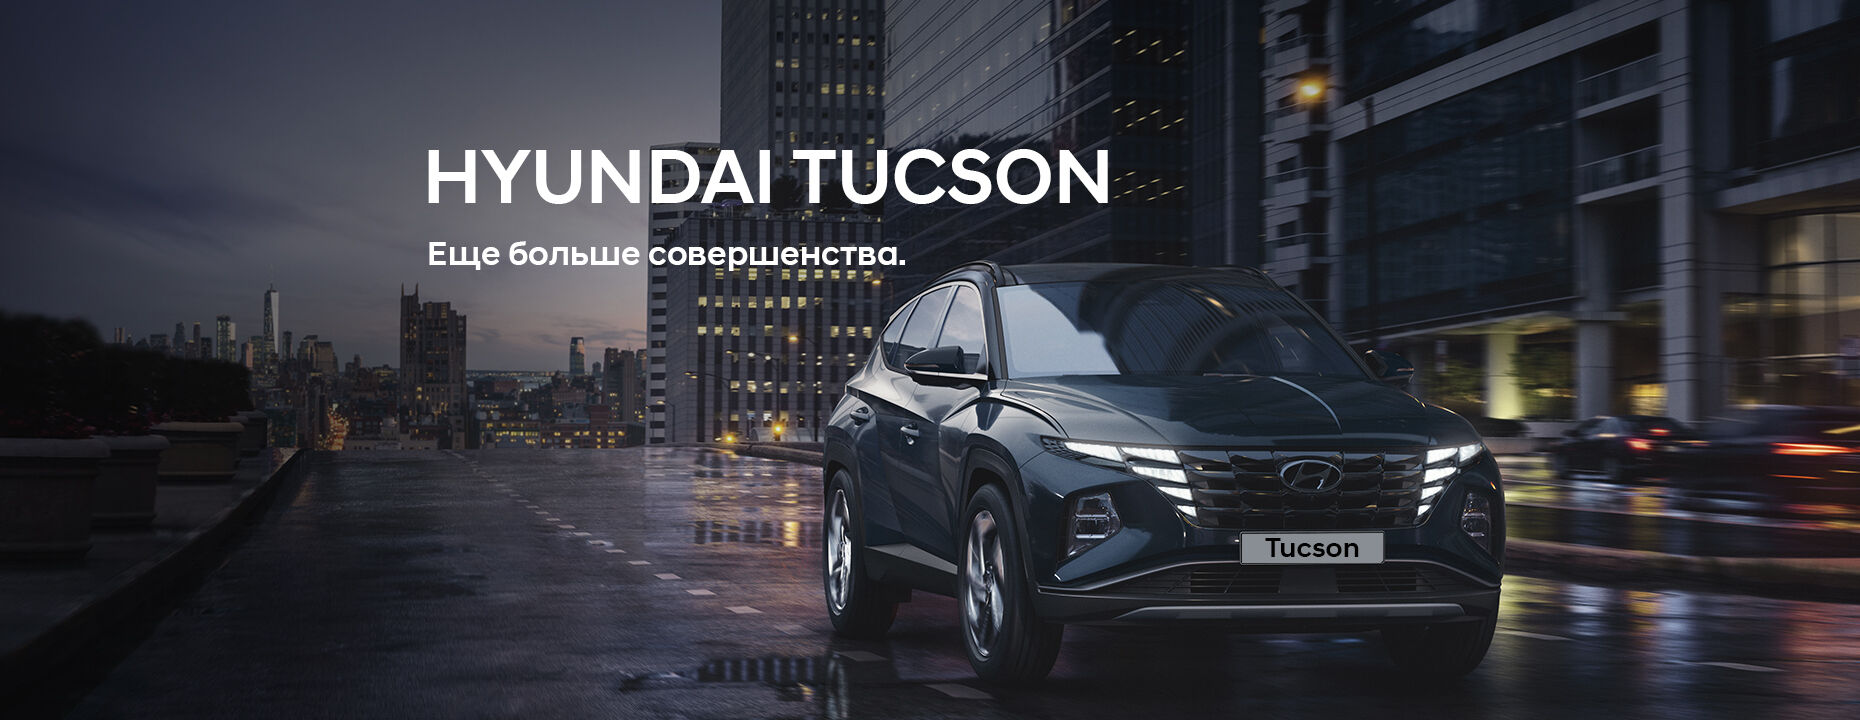 Синий Hyundai Tucson едет по дороге на фоне городских зданий